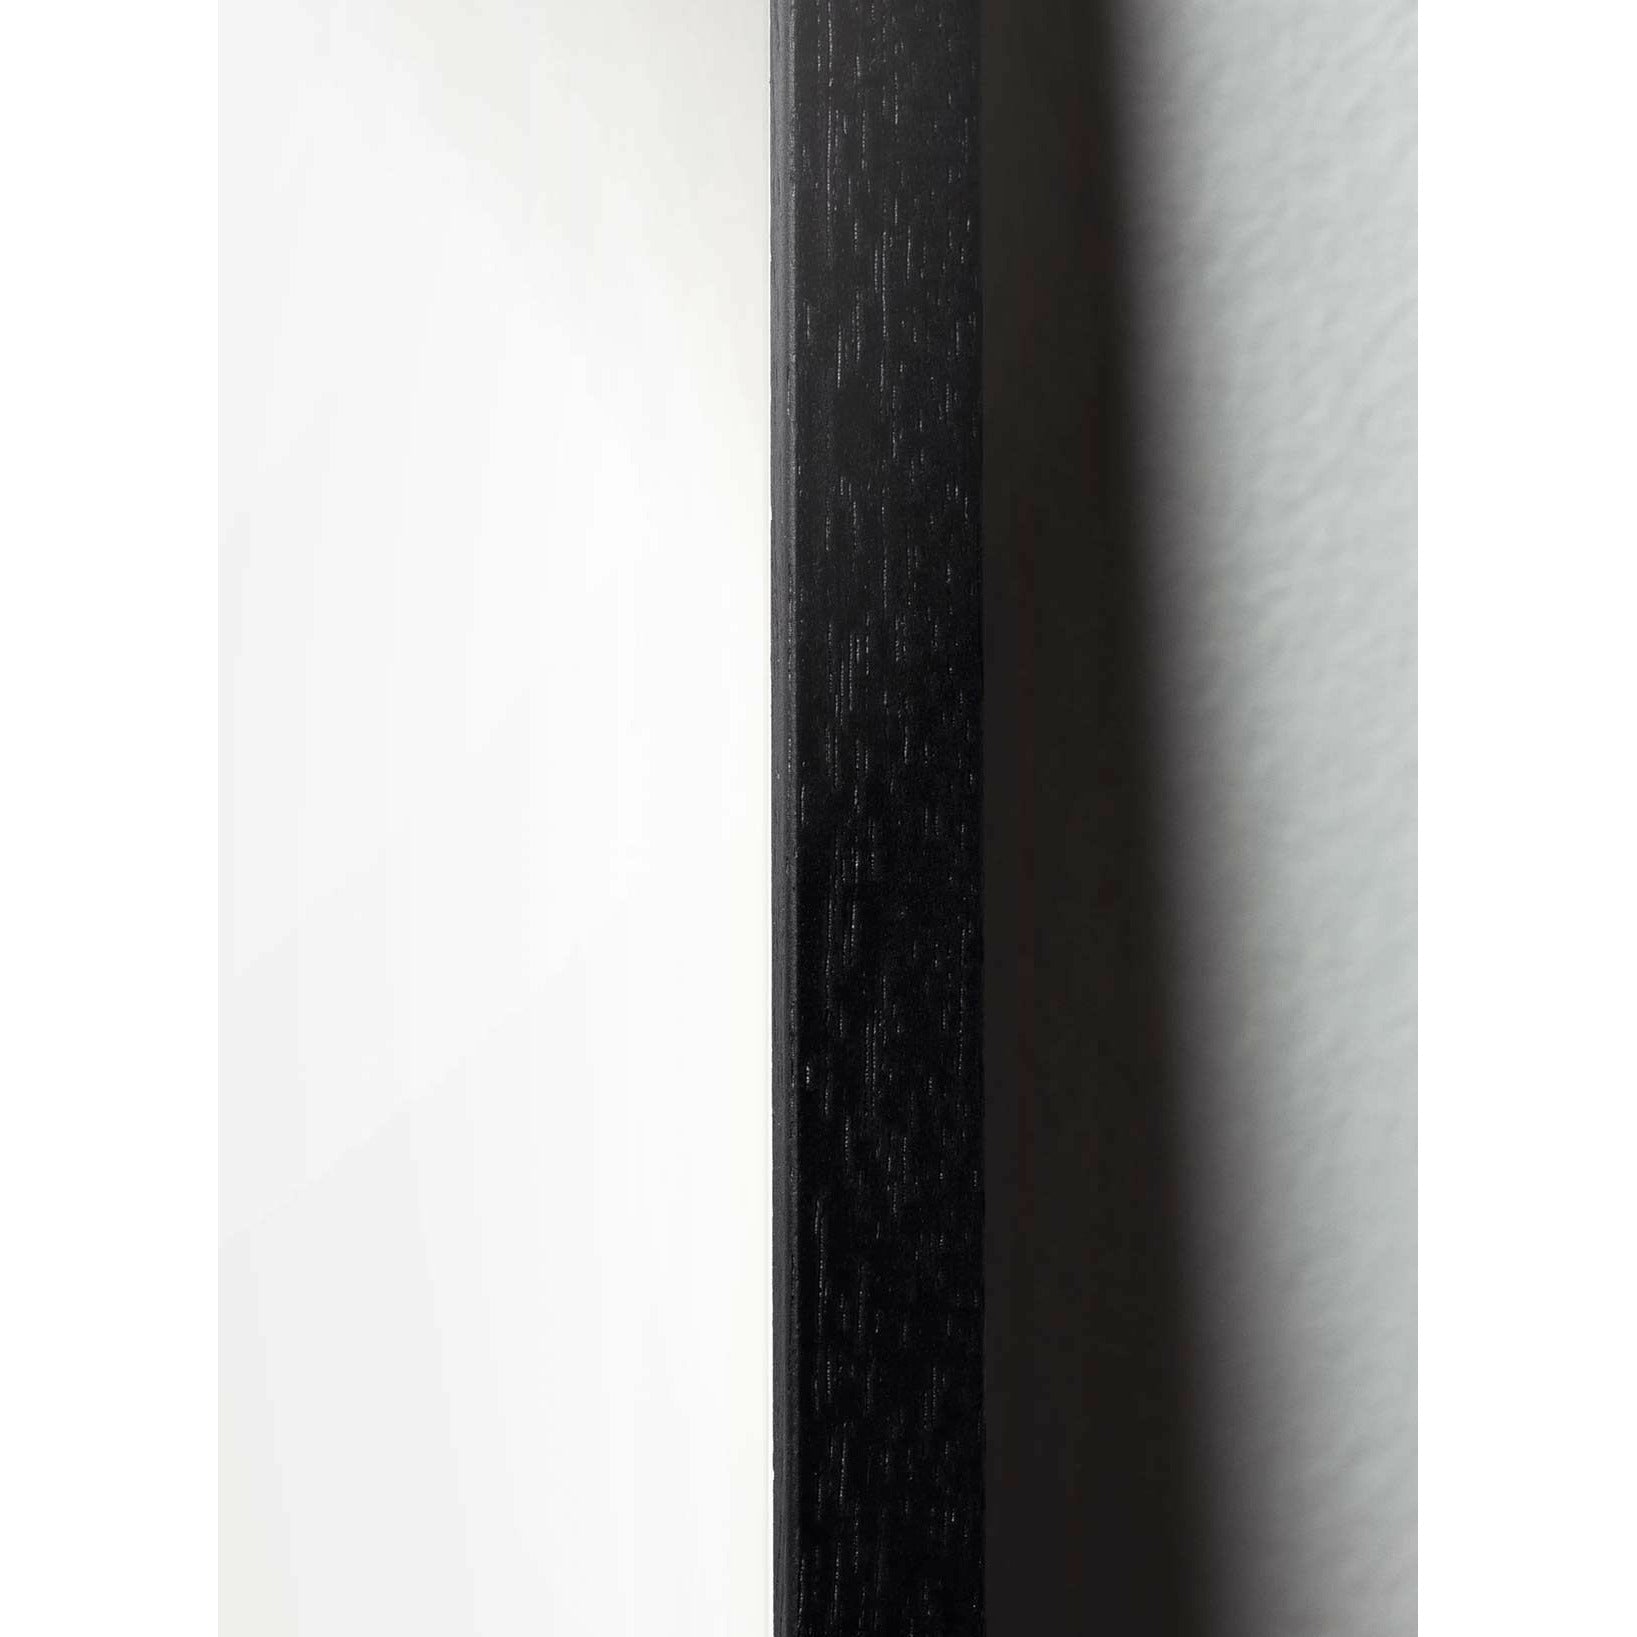 Poster in formato croce di uovo di prima cosa, cornice in legno laccato nero 50x70 cm, nero